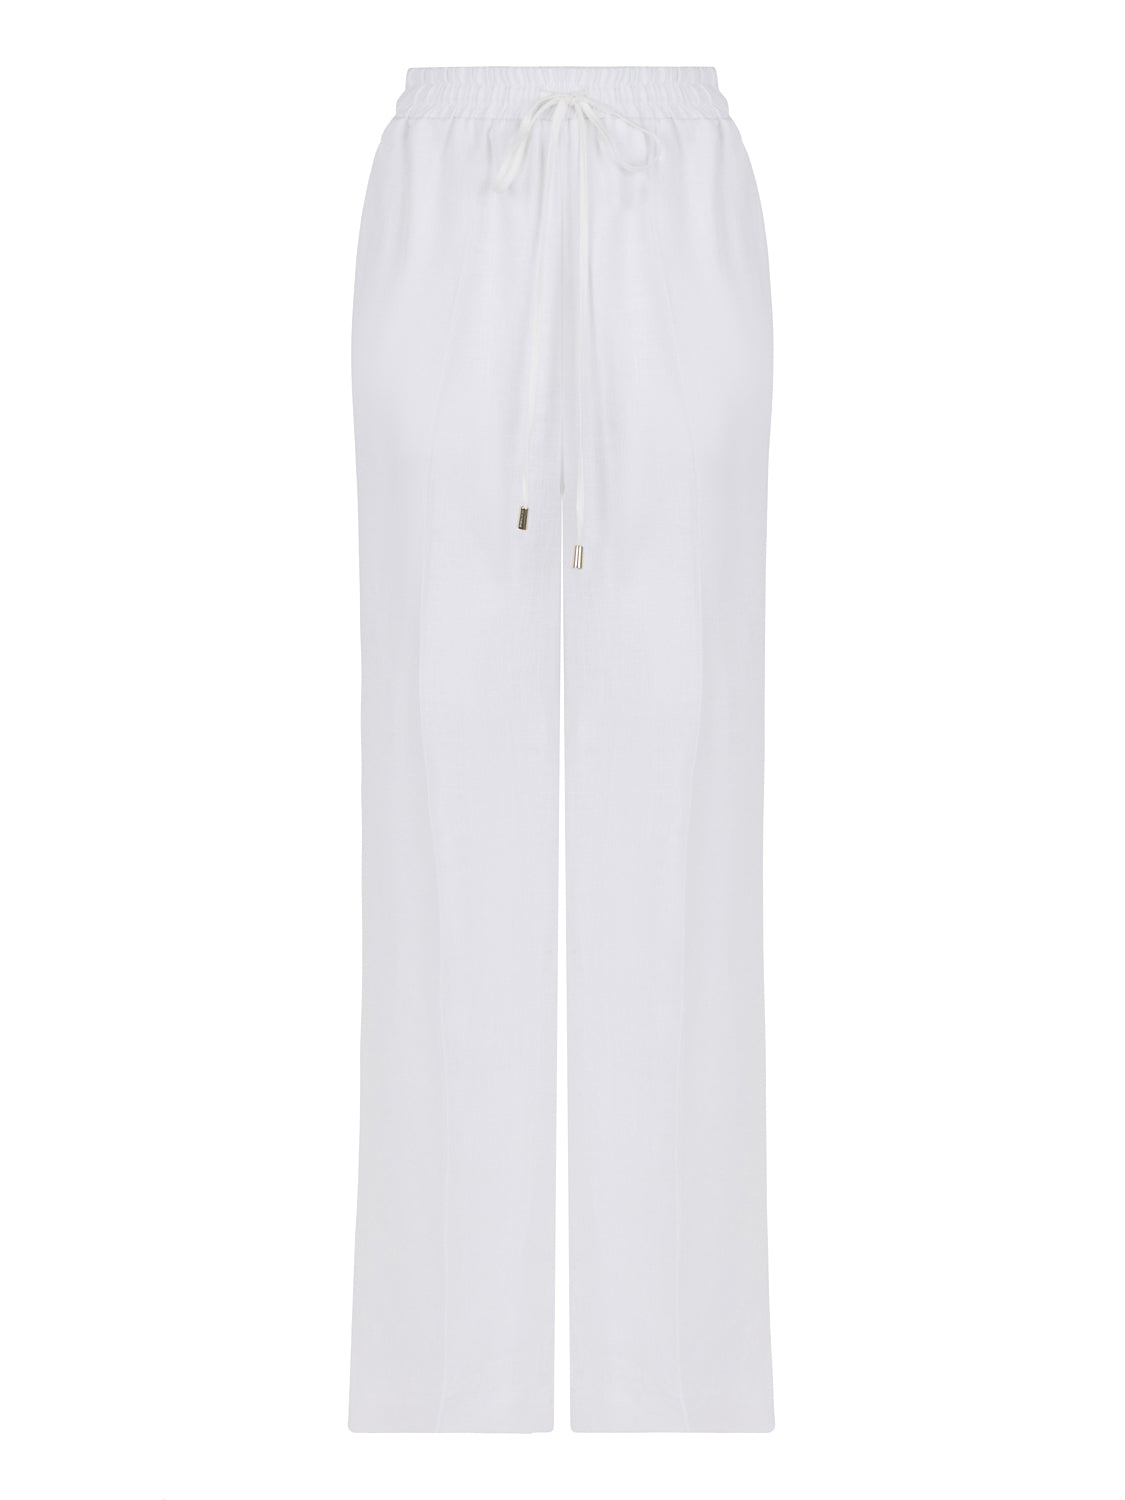 Shop Nocturne Women's White Wide-leg Linen Pants